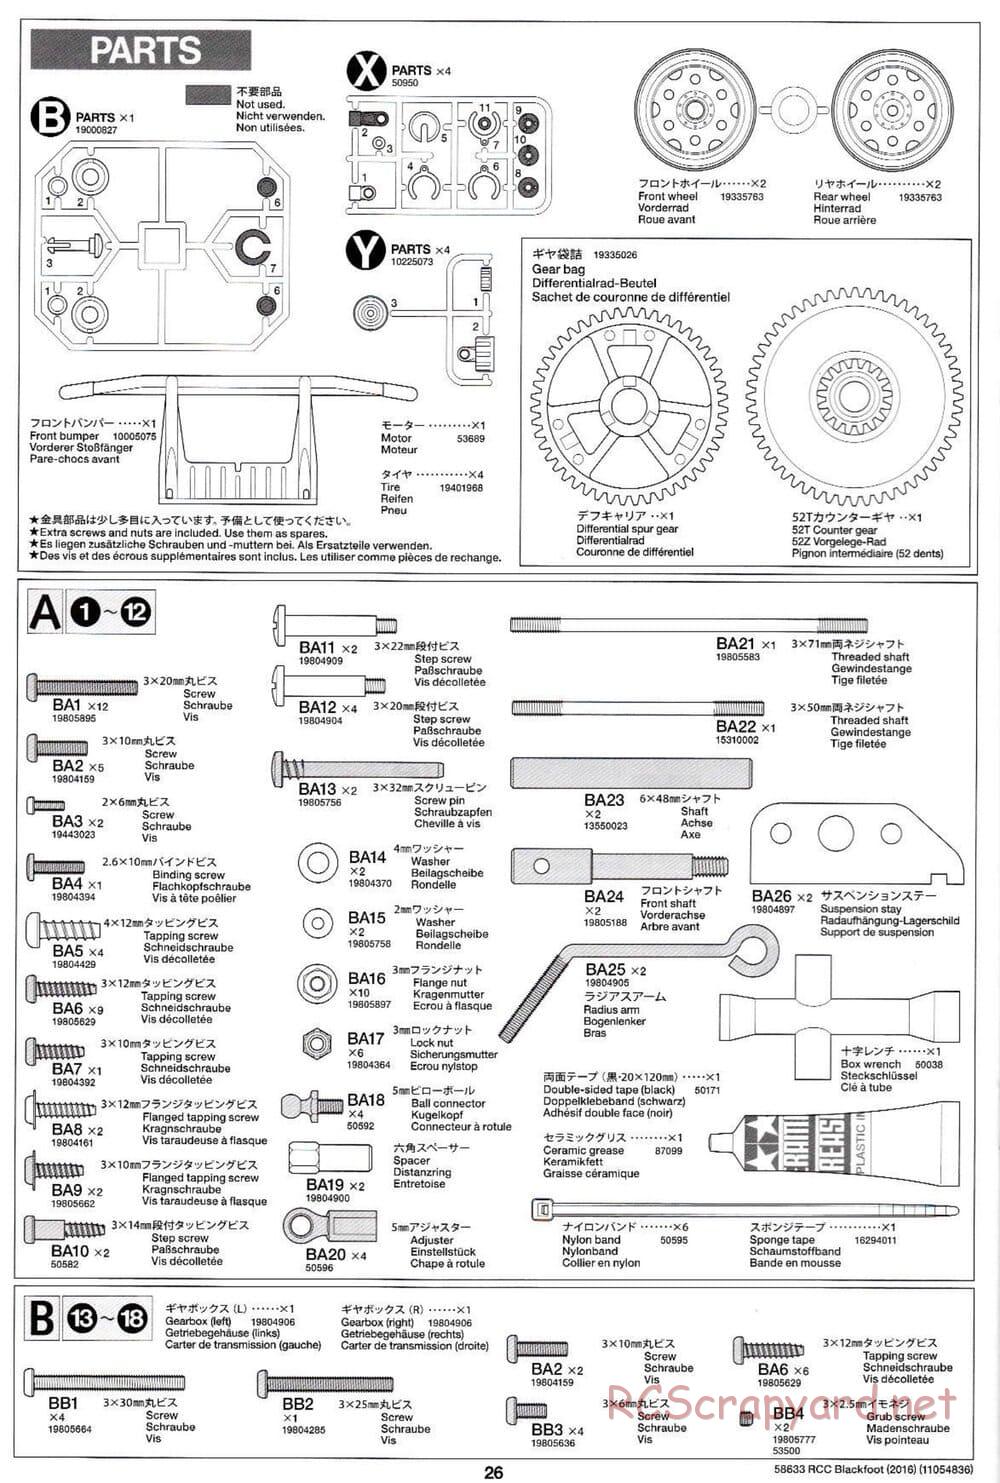 Tamiya - Blackfoot 2016 - ORV Chassis - Manual - Page 26